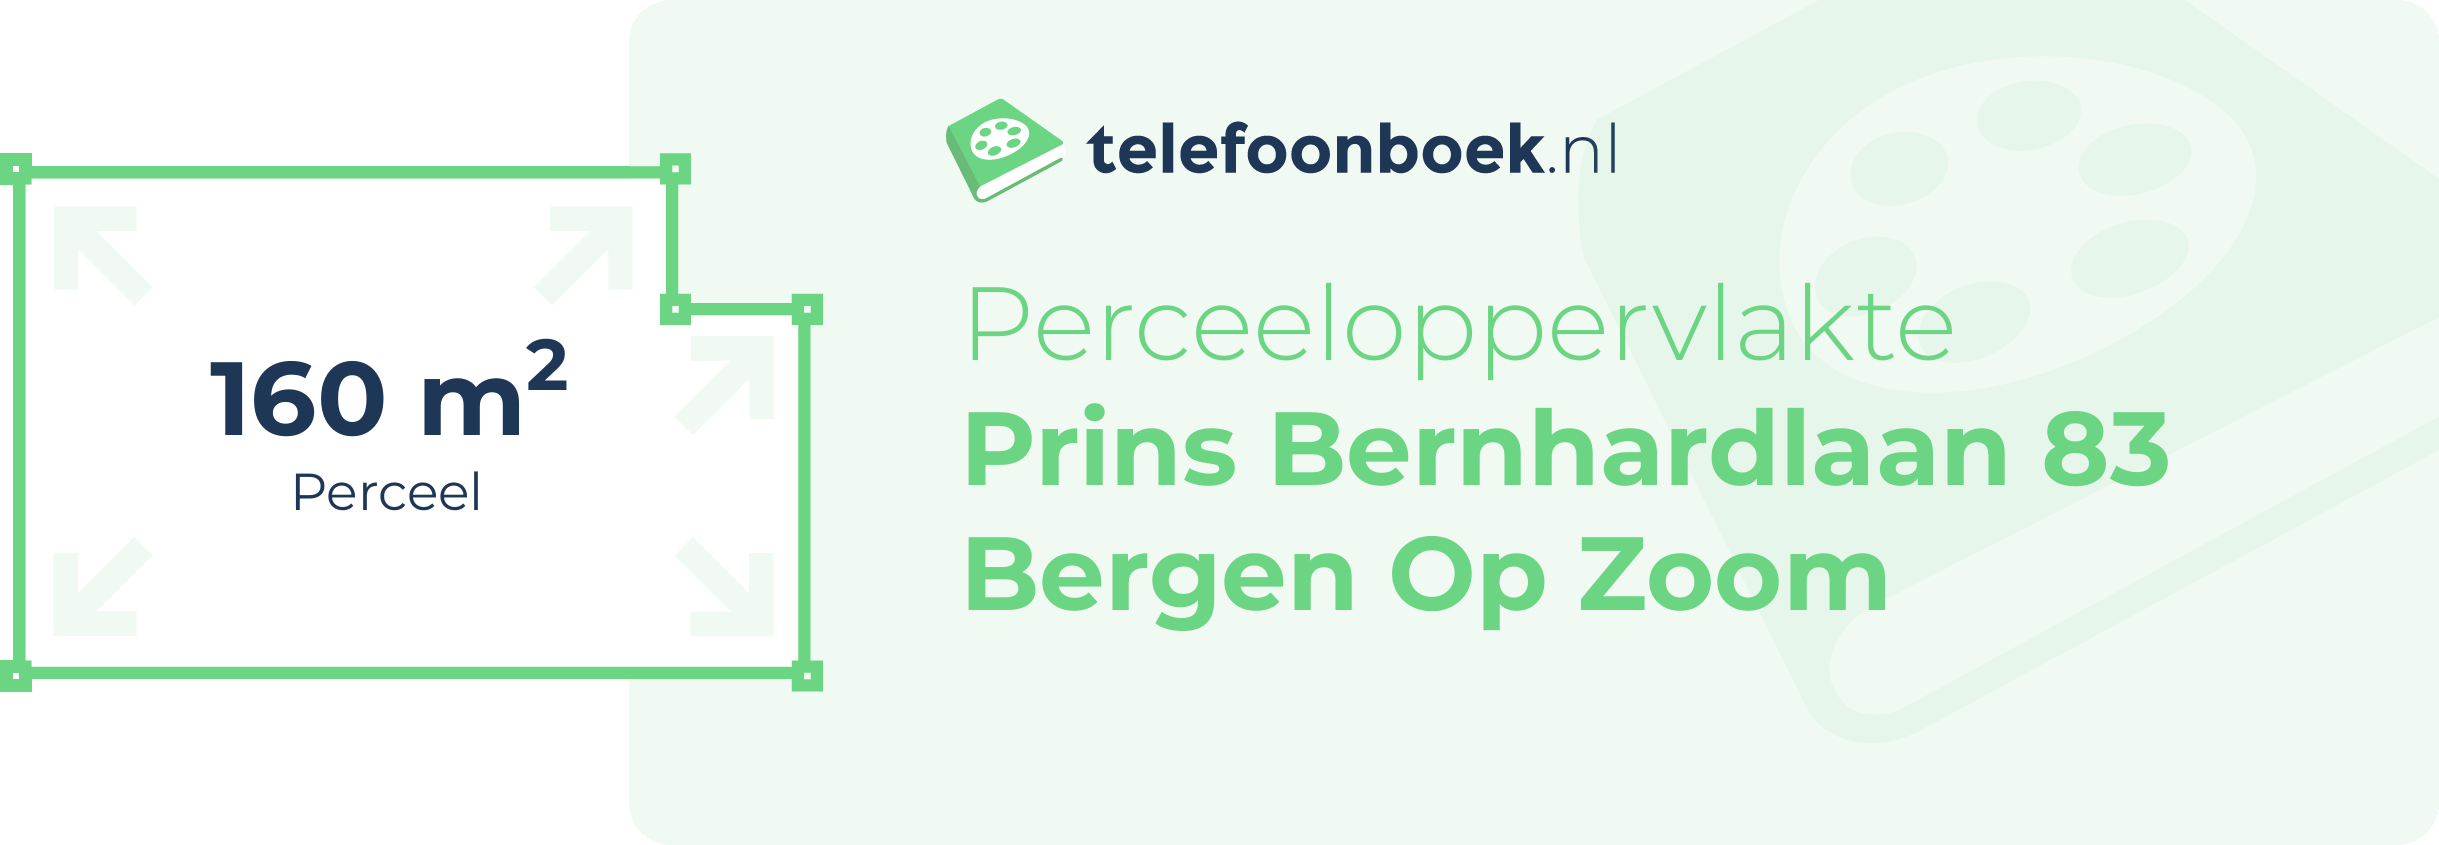 Perceeloppervlakte Prins Bernhardlaan 83 Bergen Op Zoom